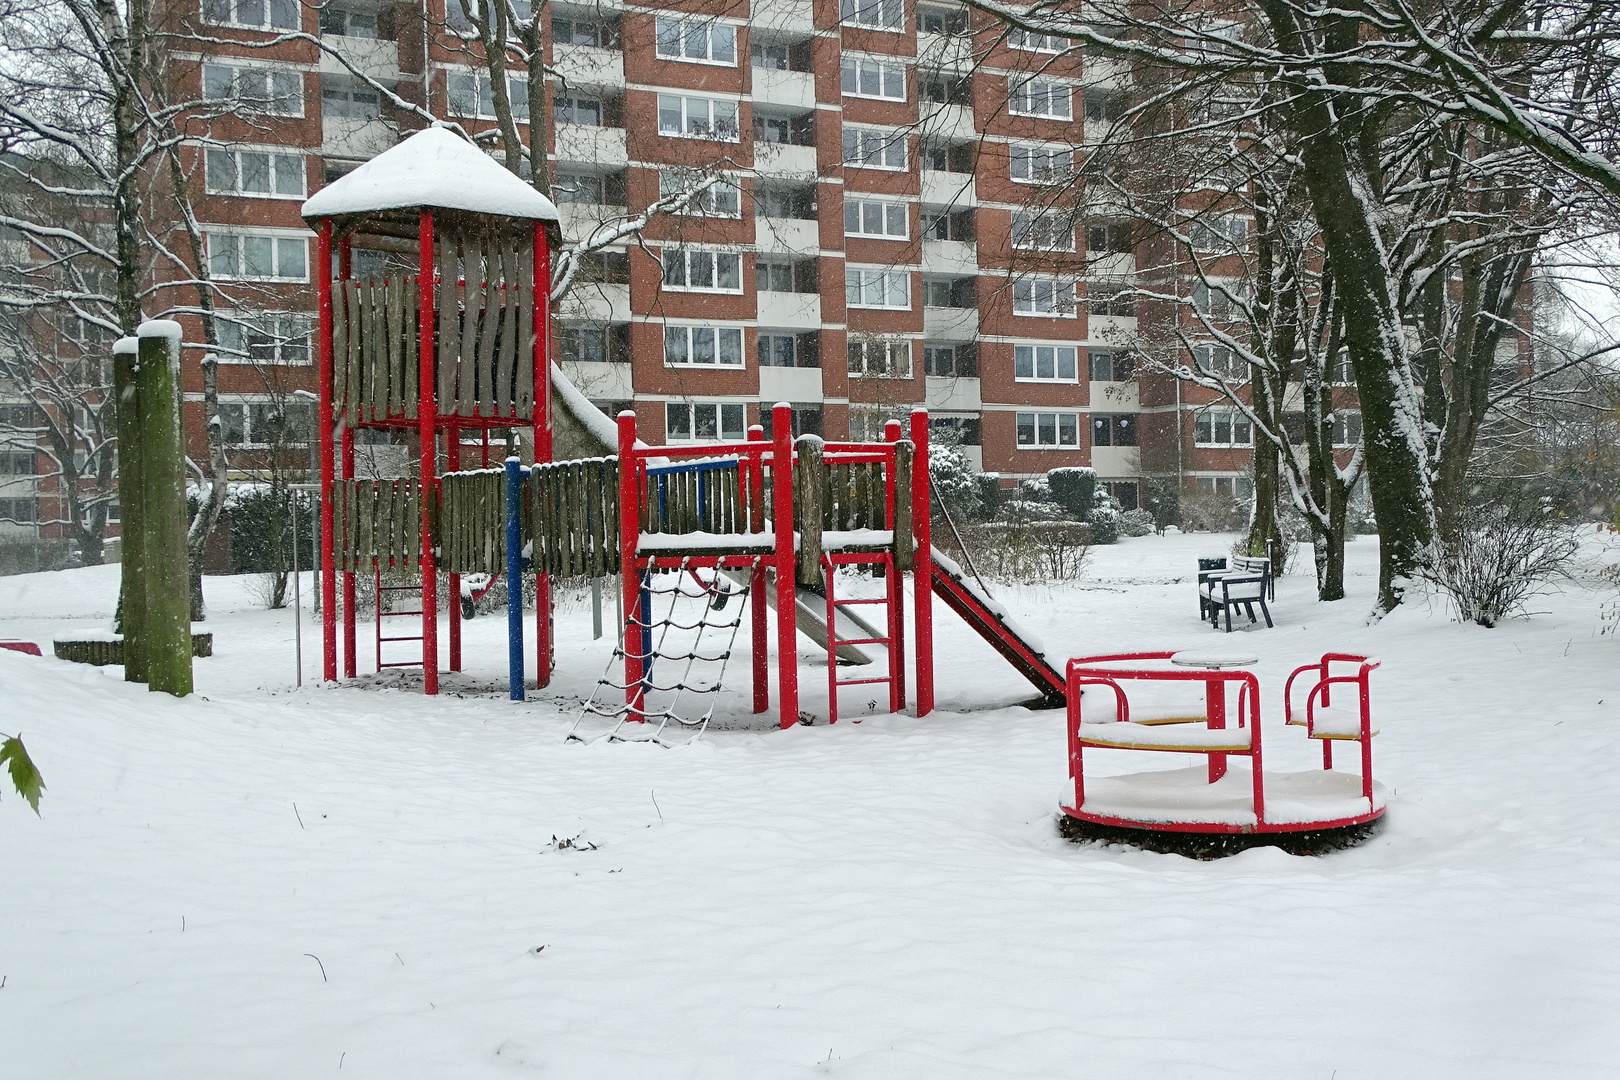 Spielplatz im Schnee